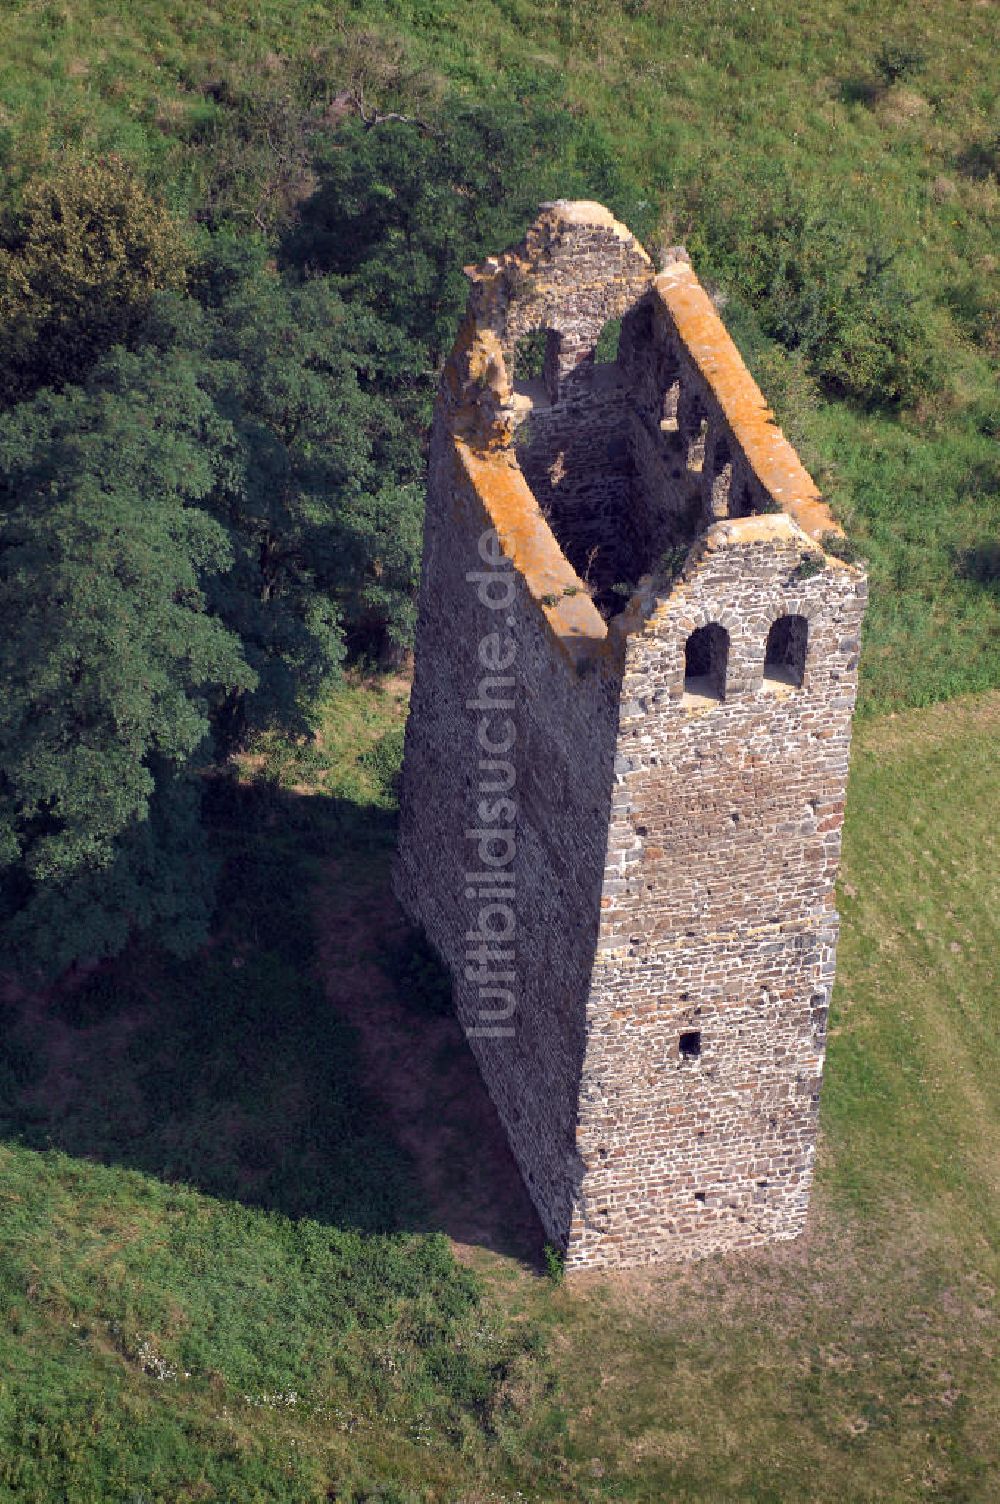 Hundisburg aus der Vogelperspektive: Die Ruine an der Strasse der Romanik besteht aus Bruchsteinmauerwerk und besitzt heute kein Dach mehr